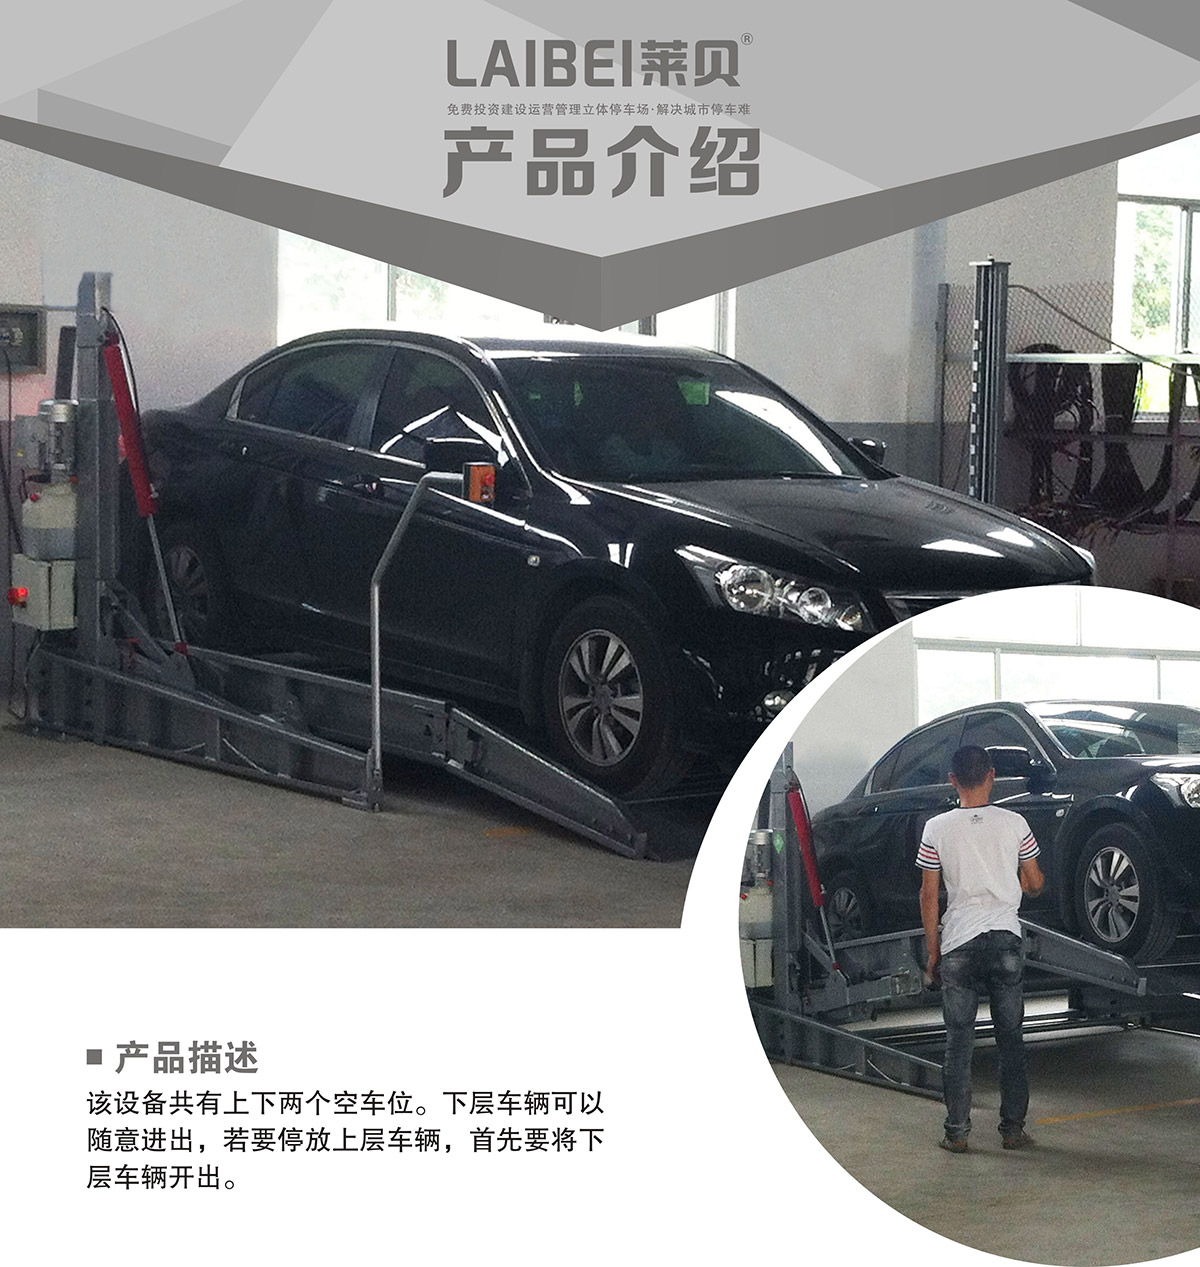 重庆PJS俯仰简易升降立体停车设备产品介绍.jpg